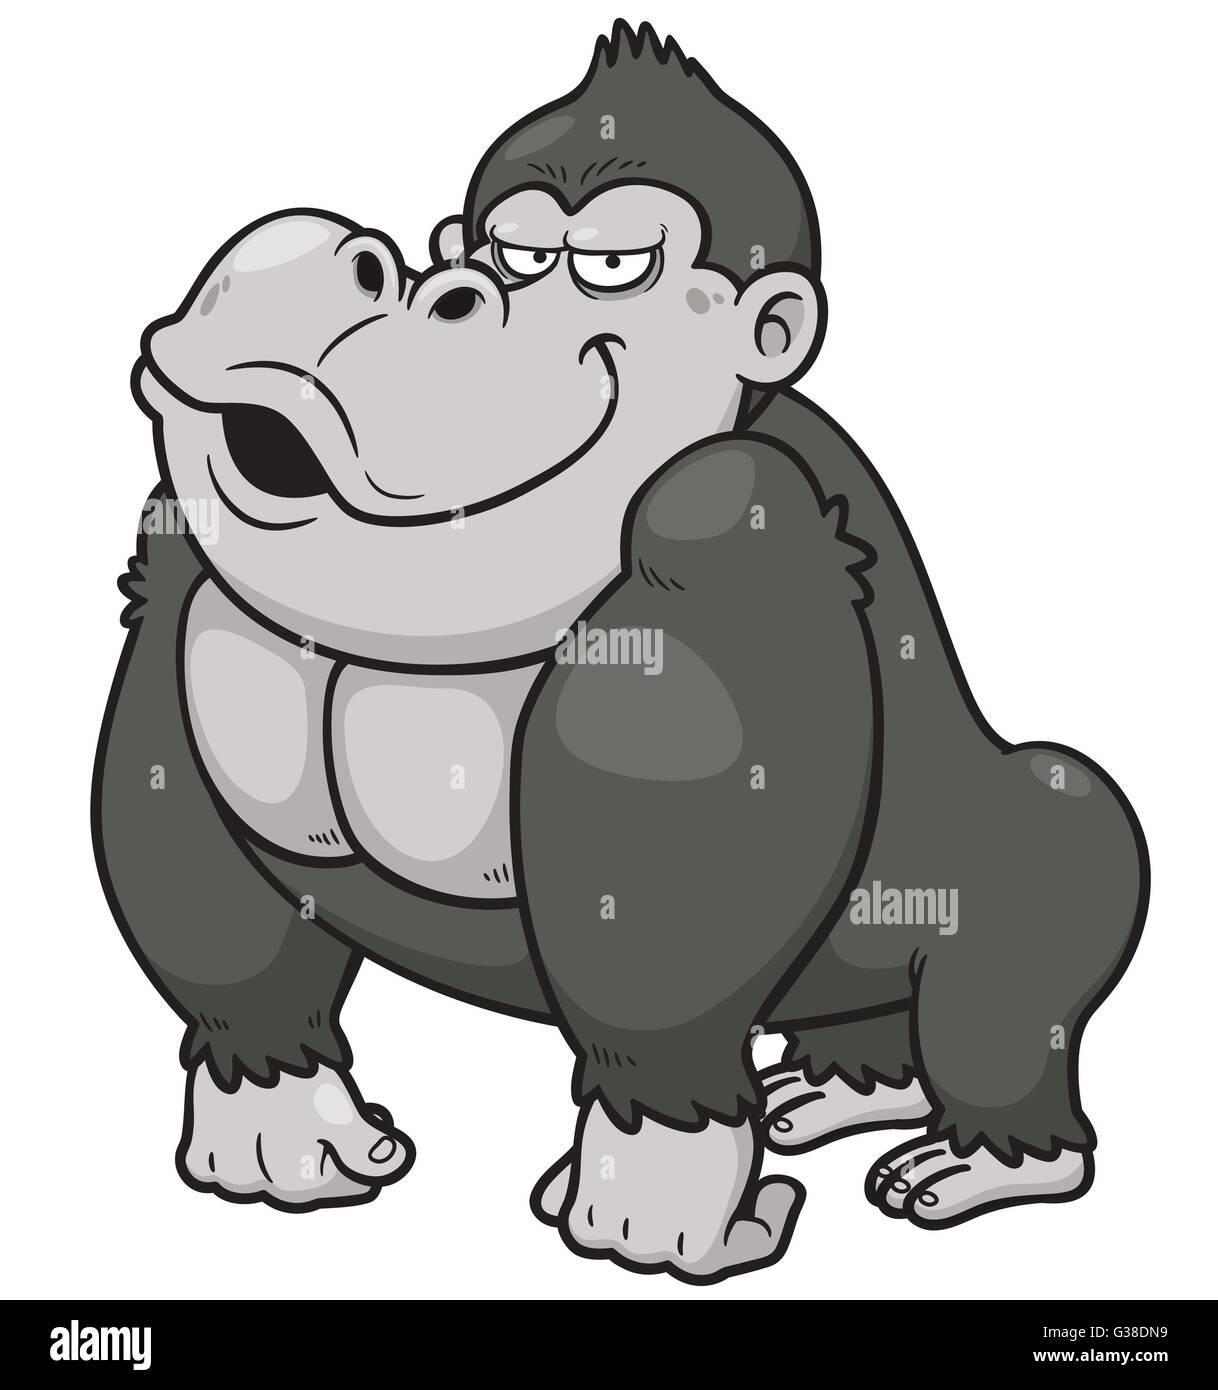 Vector illustration of Gorilla Cartoon Stock Vector